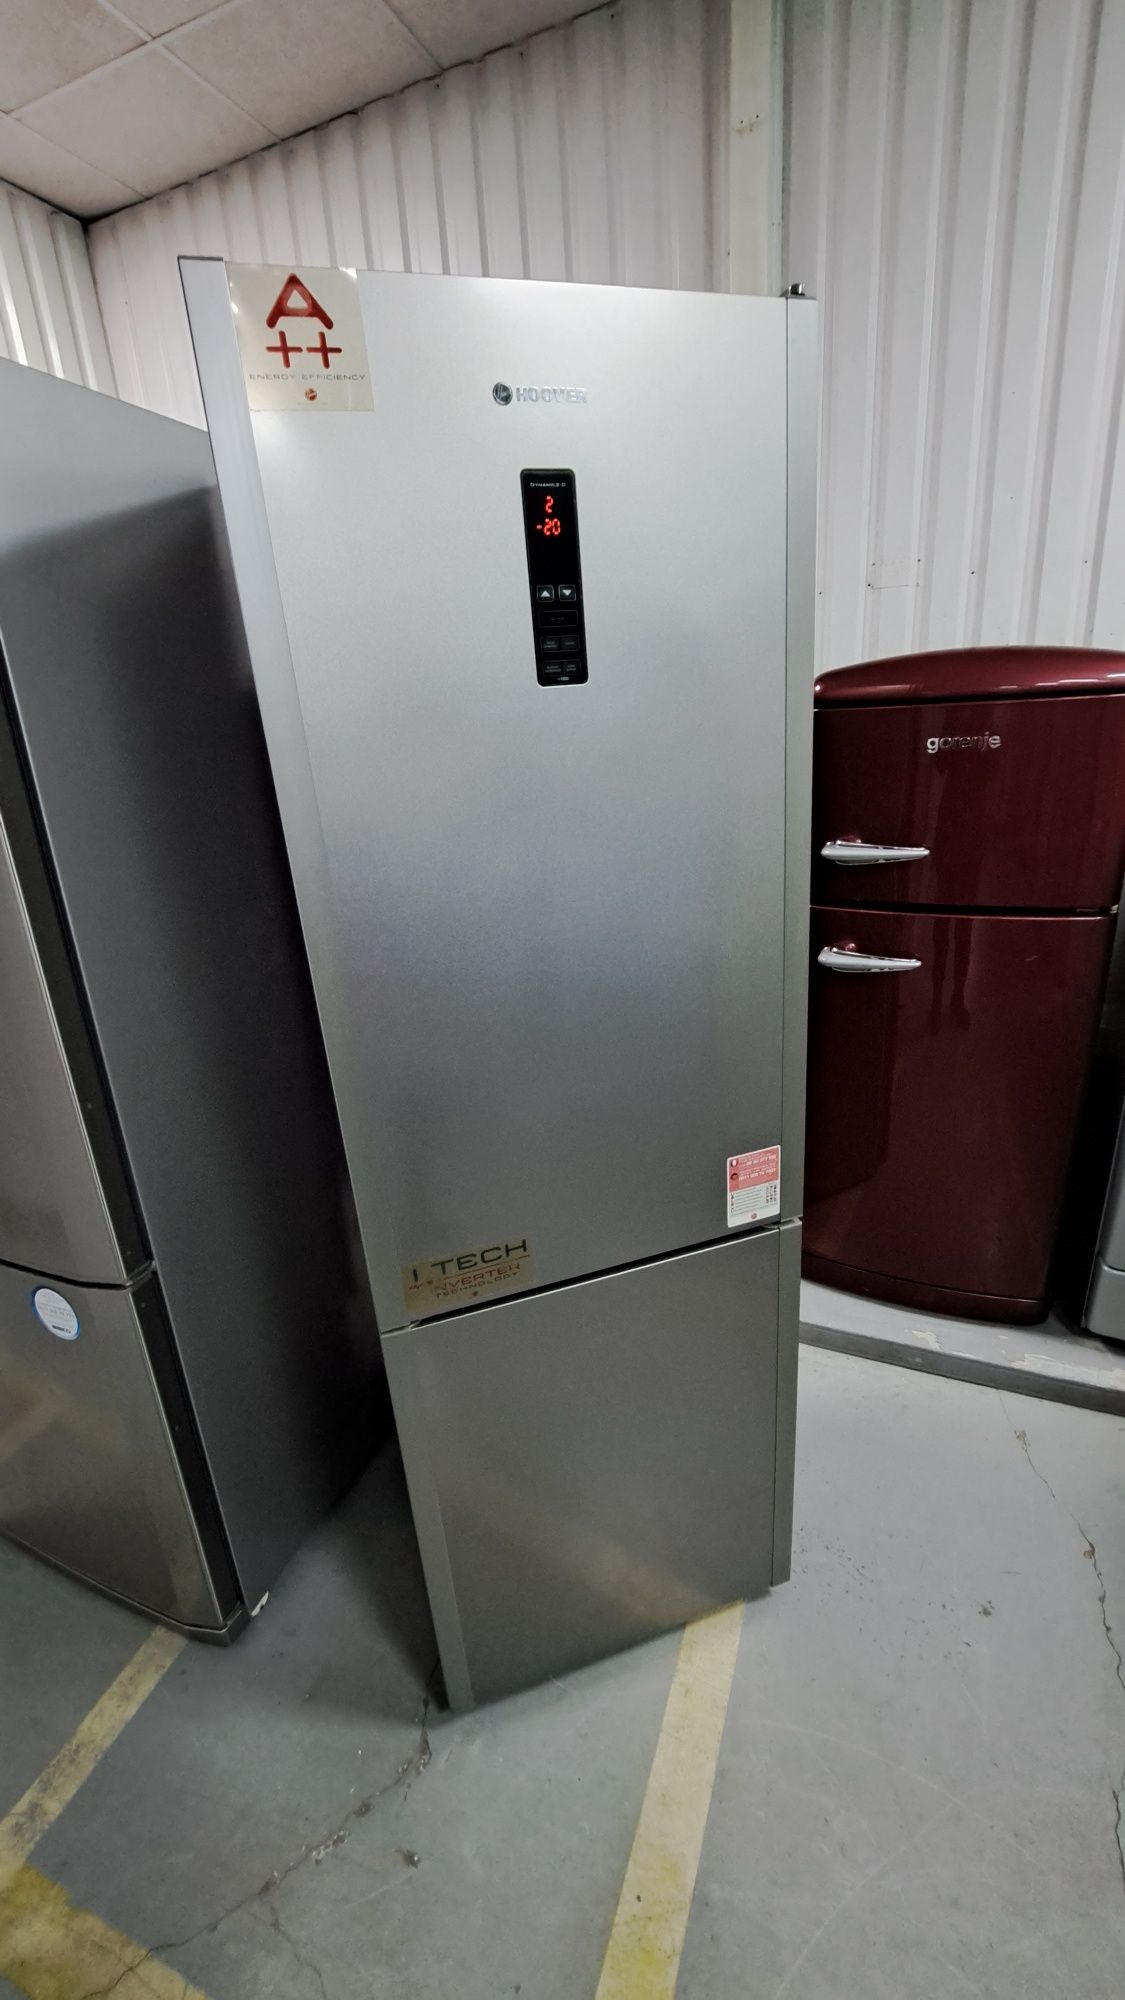 Німецький срібний холодильник Siemens kgn43 невисокий 185*60*60 nofros